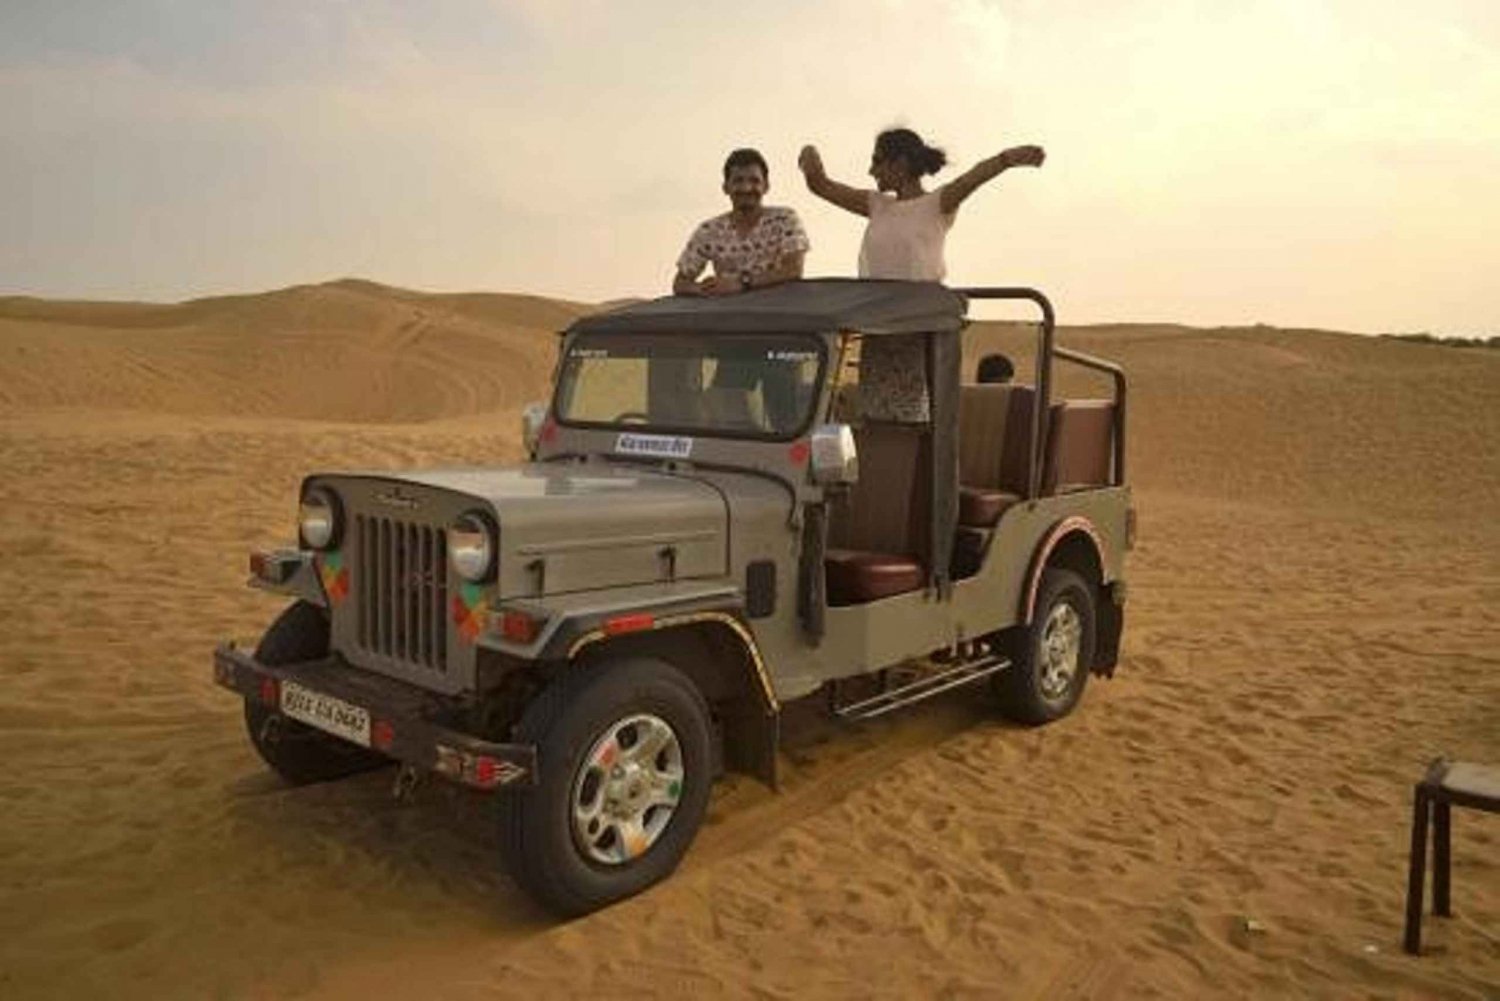 Woestijn-jeepsafari en kameelsafari vanuit Jodhpur